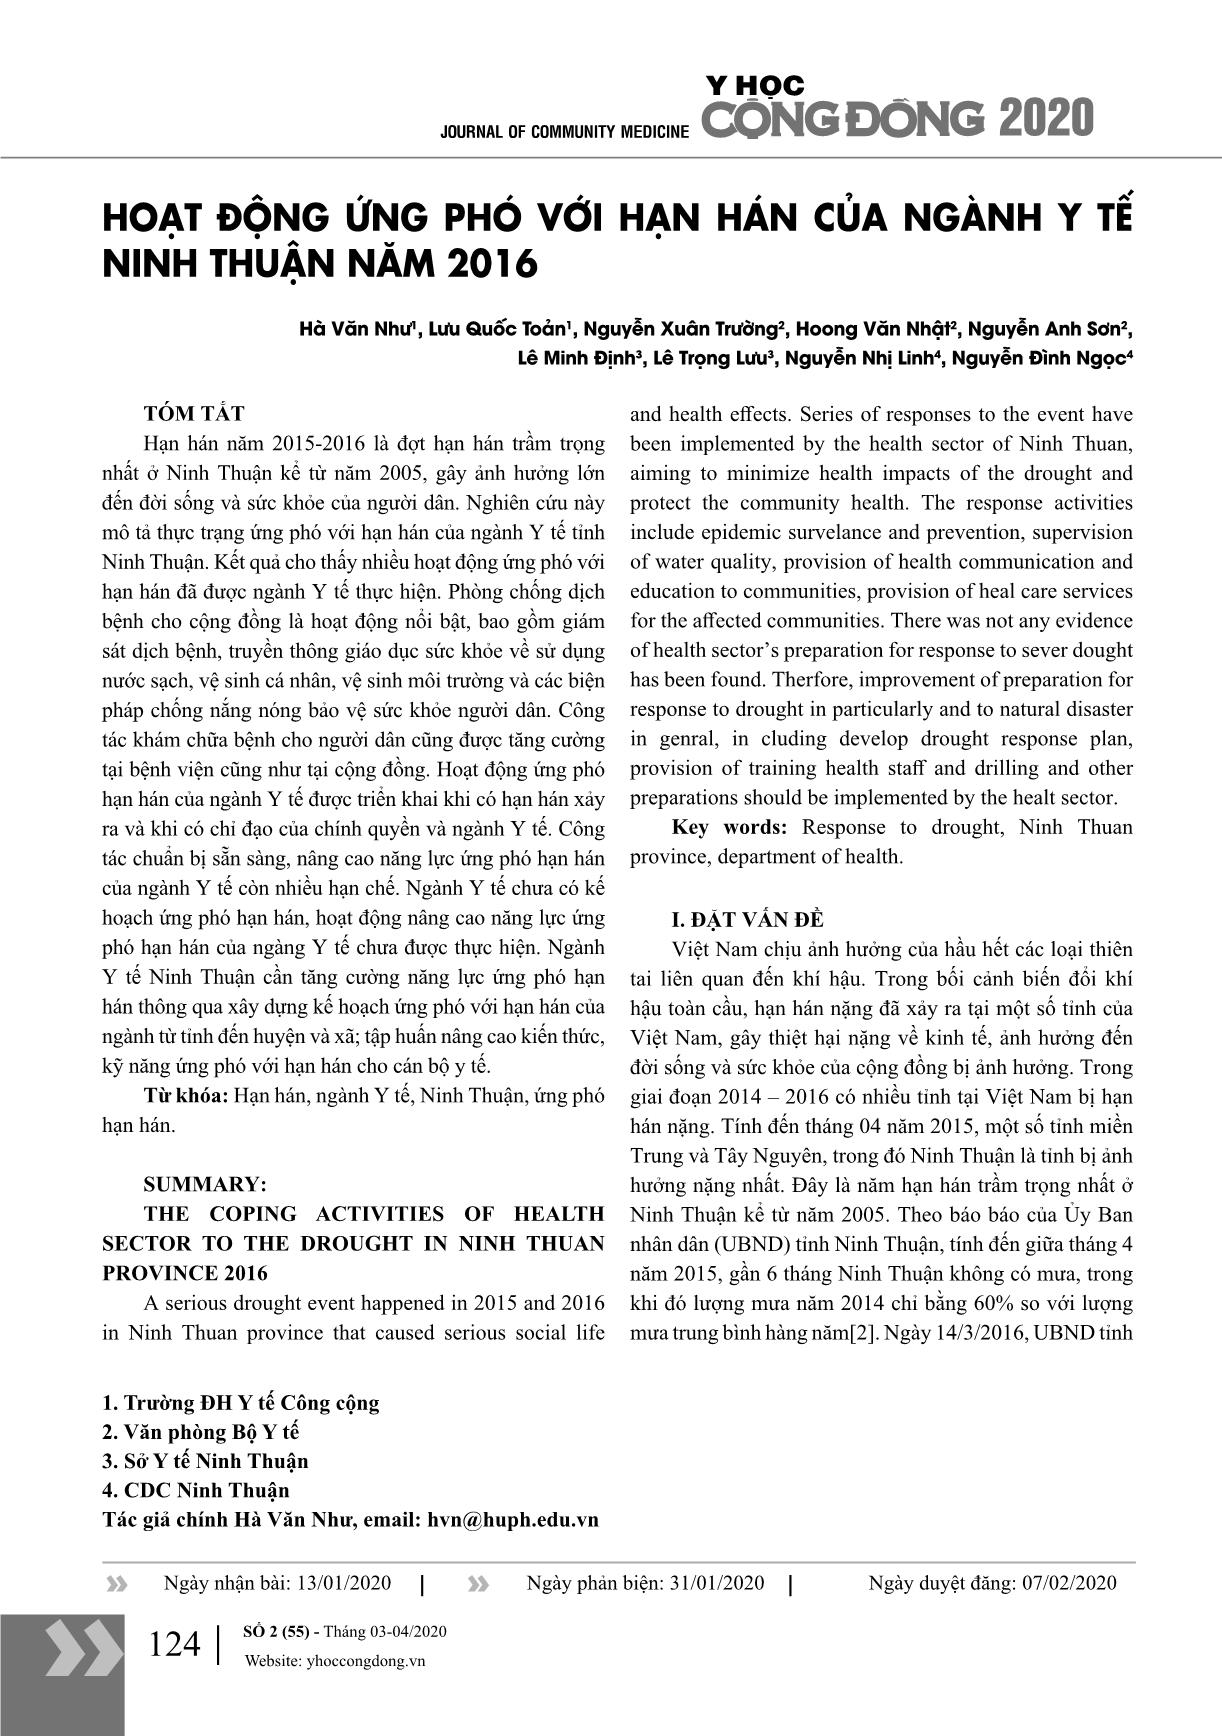 Hoạt động ứng phó với hạn hán của ngành y tế Ninh Thuận năm 2016 trang 1